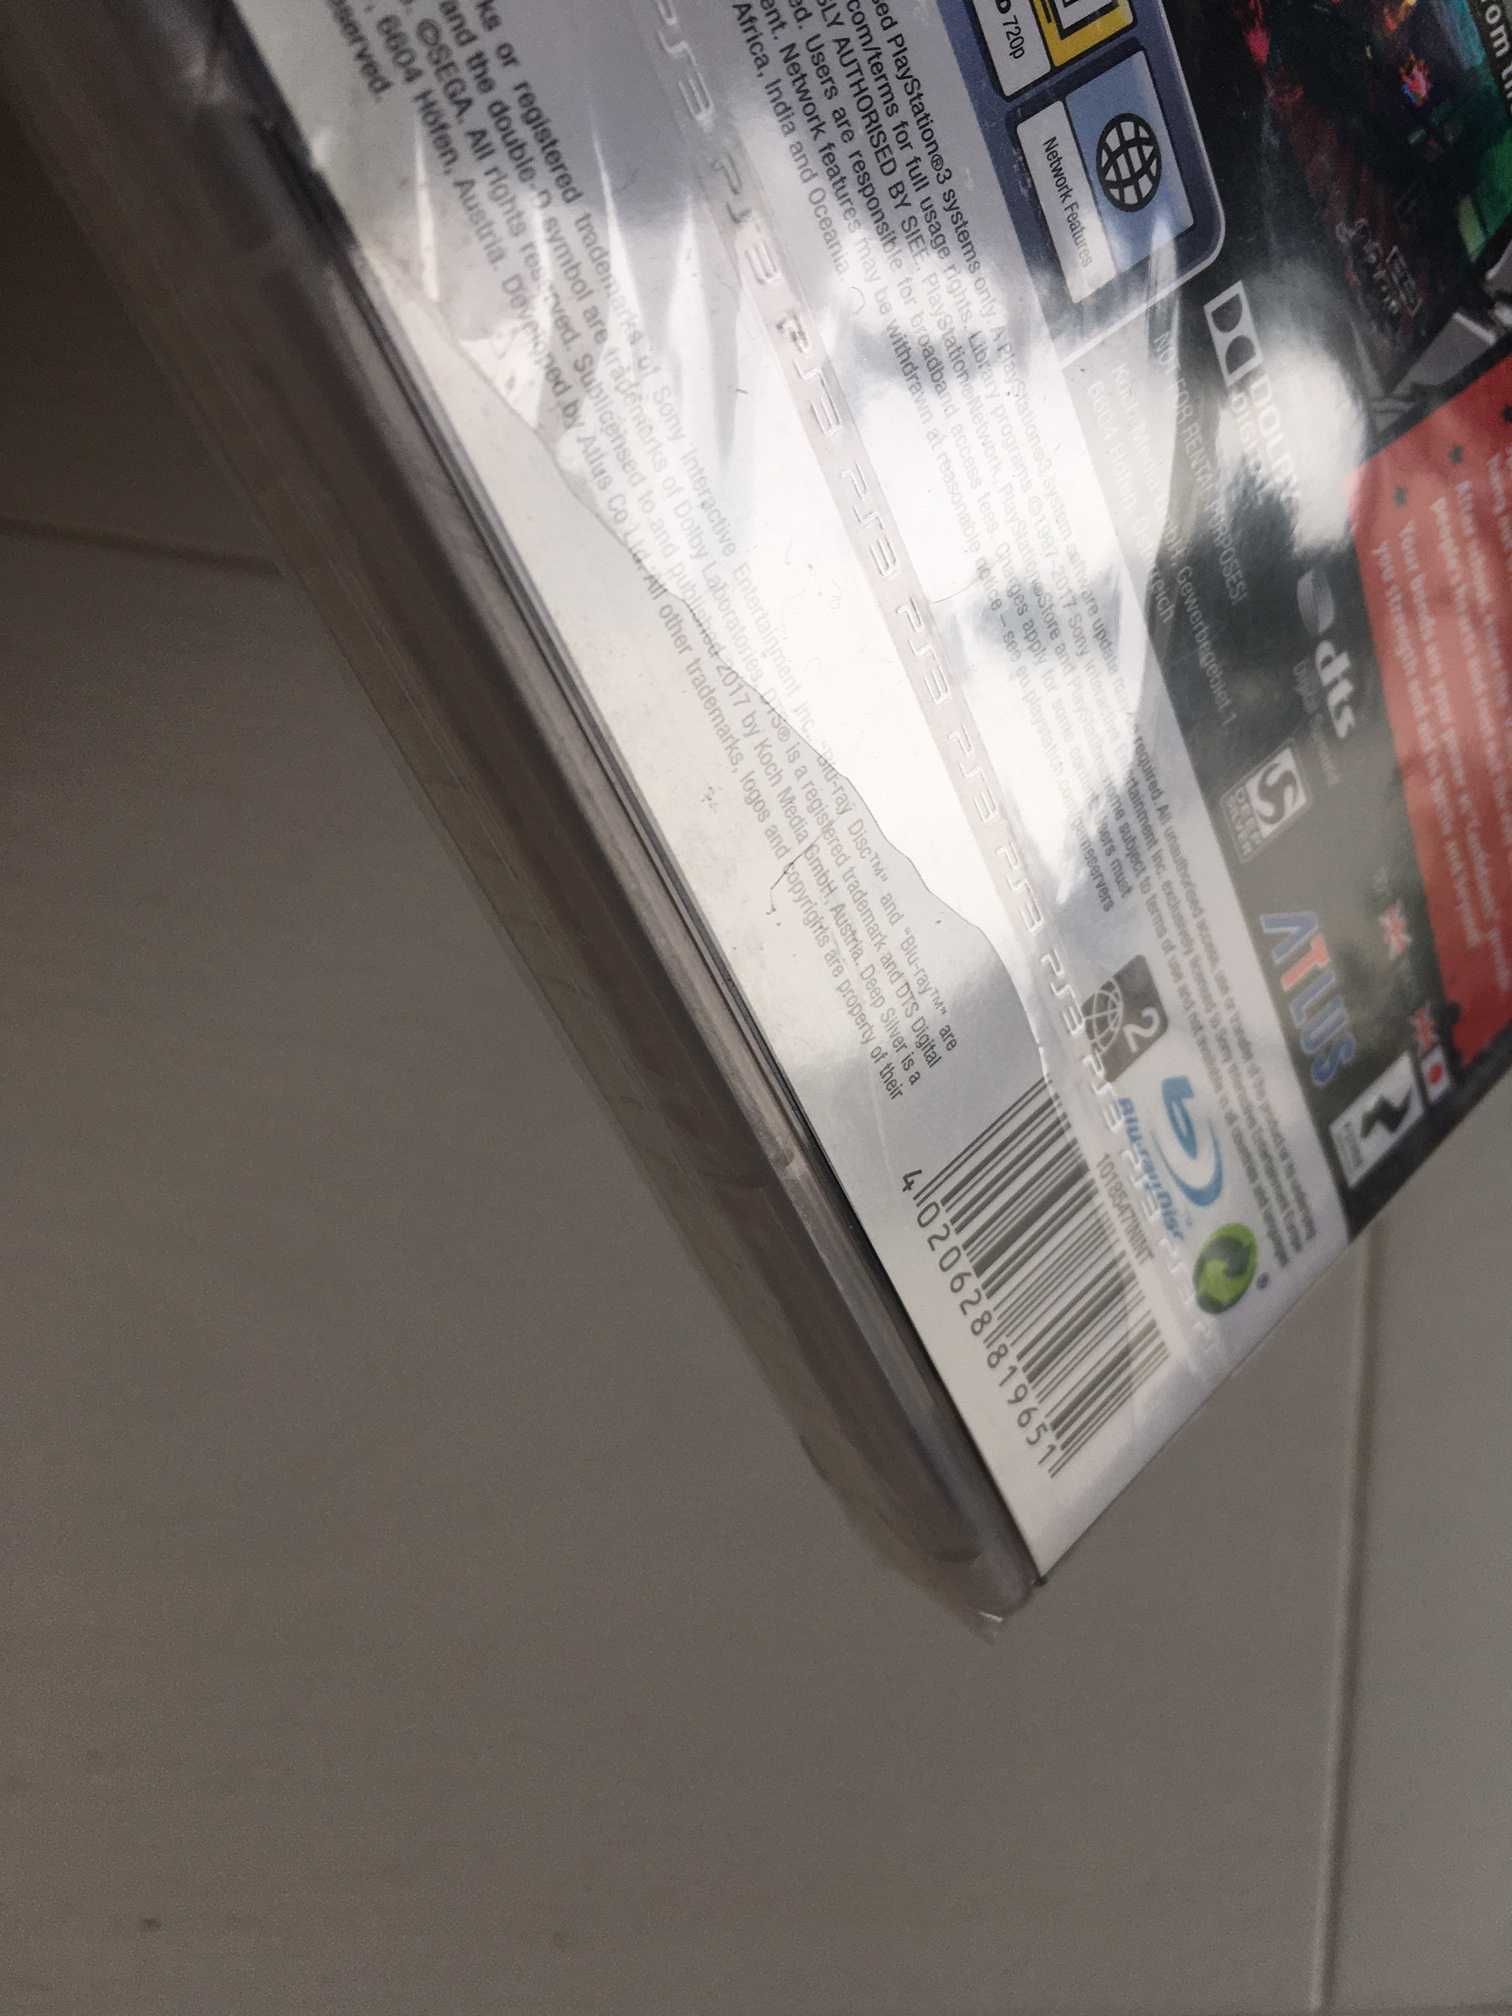 Gra PS3 Persona 5 wydanie premierowe PEGI, nowa, folia, Unikat